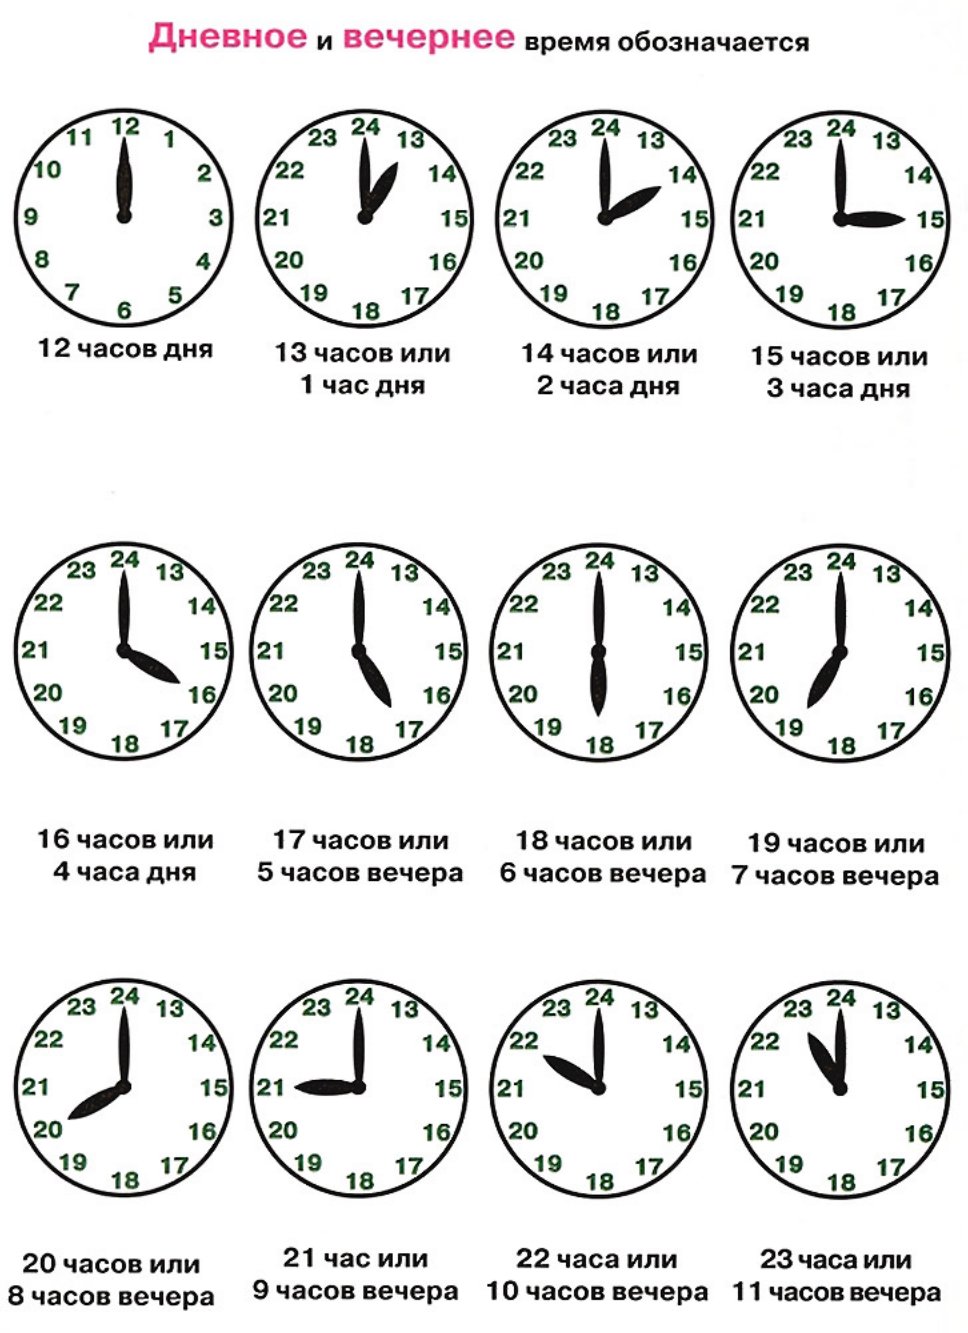 13 14 сколько время. Как определять время по часам. Кап понимать время по часам. Задания на определение времени по часам. Изучение часов для детей.